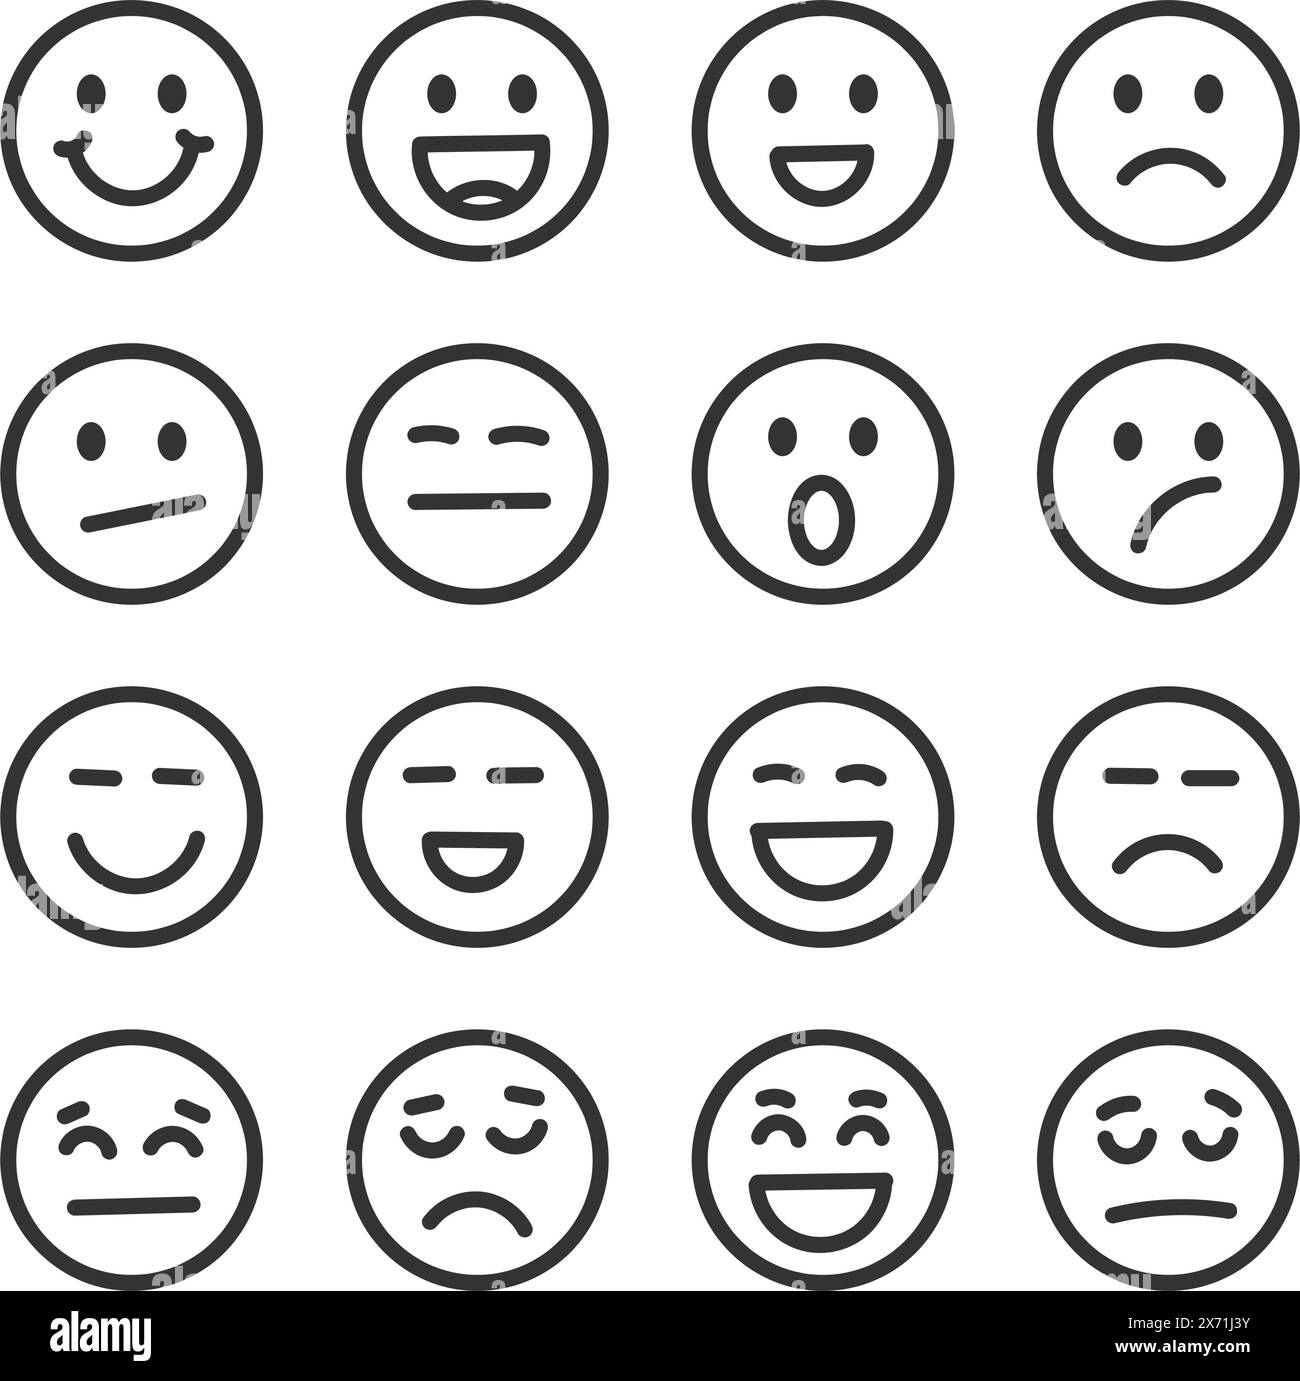 Icona dei volti delle emoji in stile disegnato a mano. Illustrazione vettoriale delle emoticon su sfondo isolato. Concetto di business dei cartelli facciali felici e tristi. Illustrazione Vettoriale